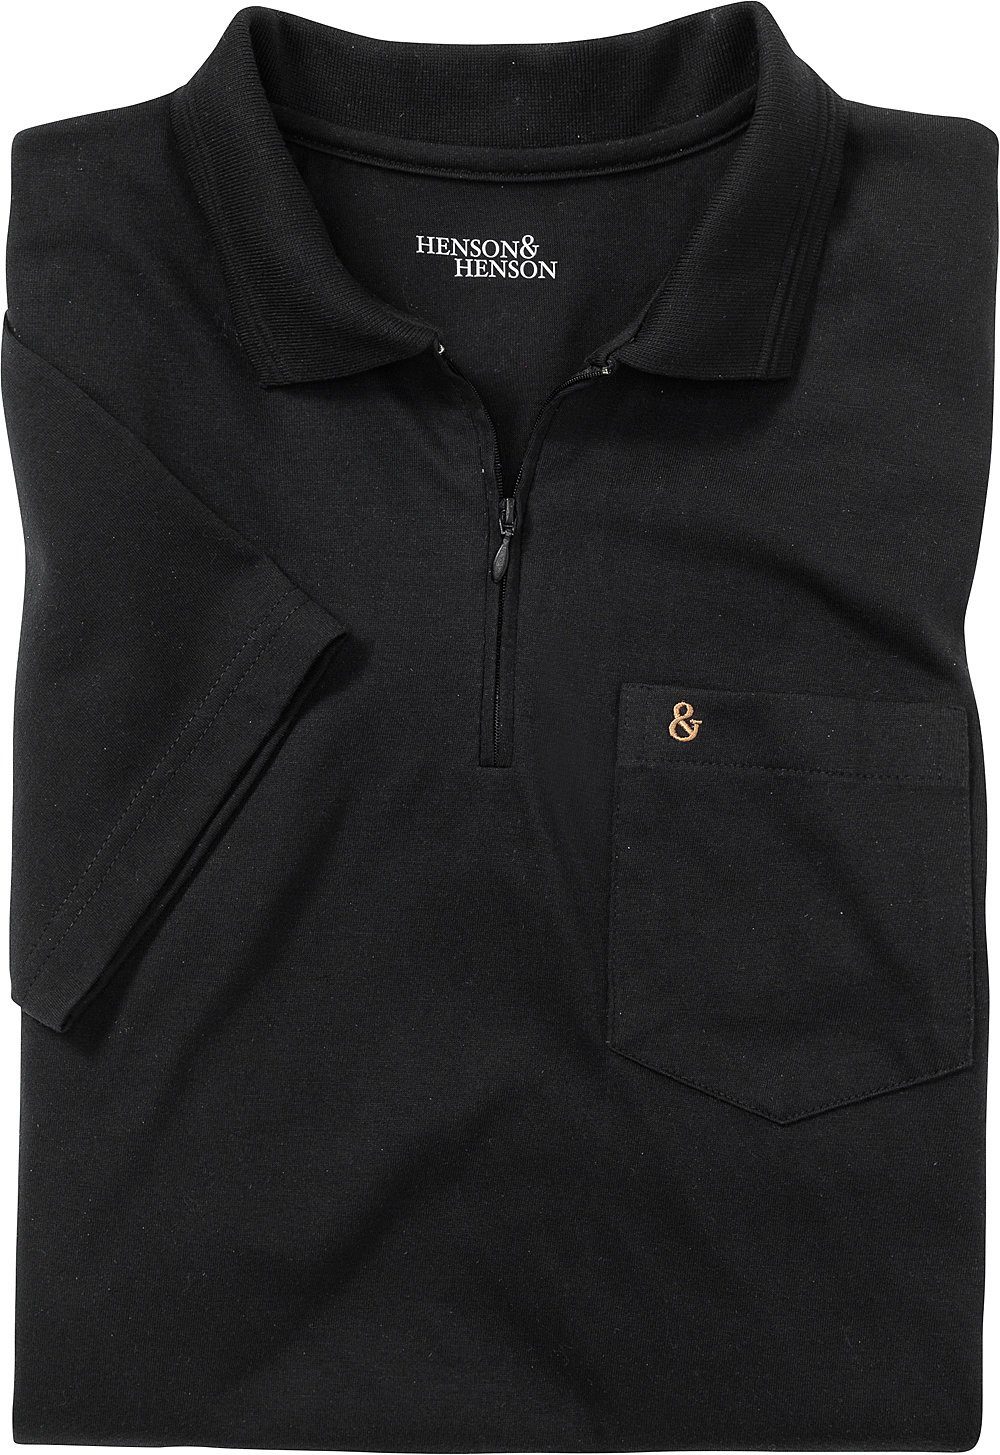 Superweiches HENSON&HENSON schwarz Jersey-Gewebe Poloshirt